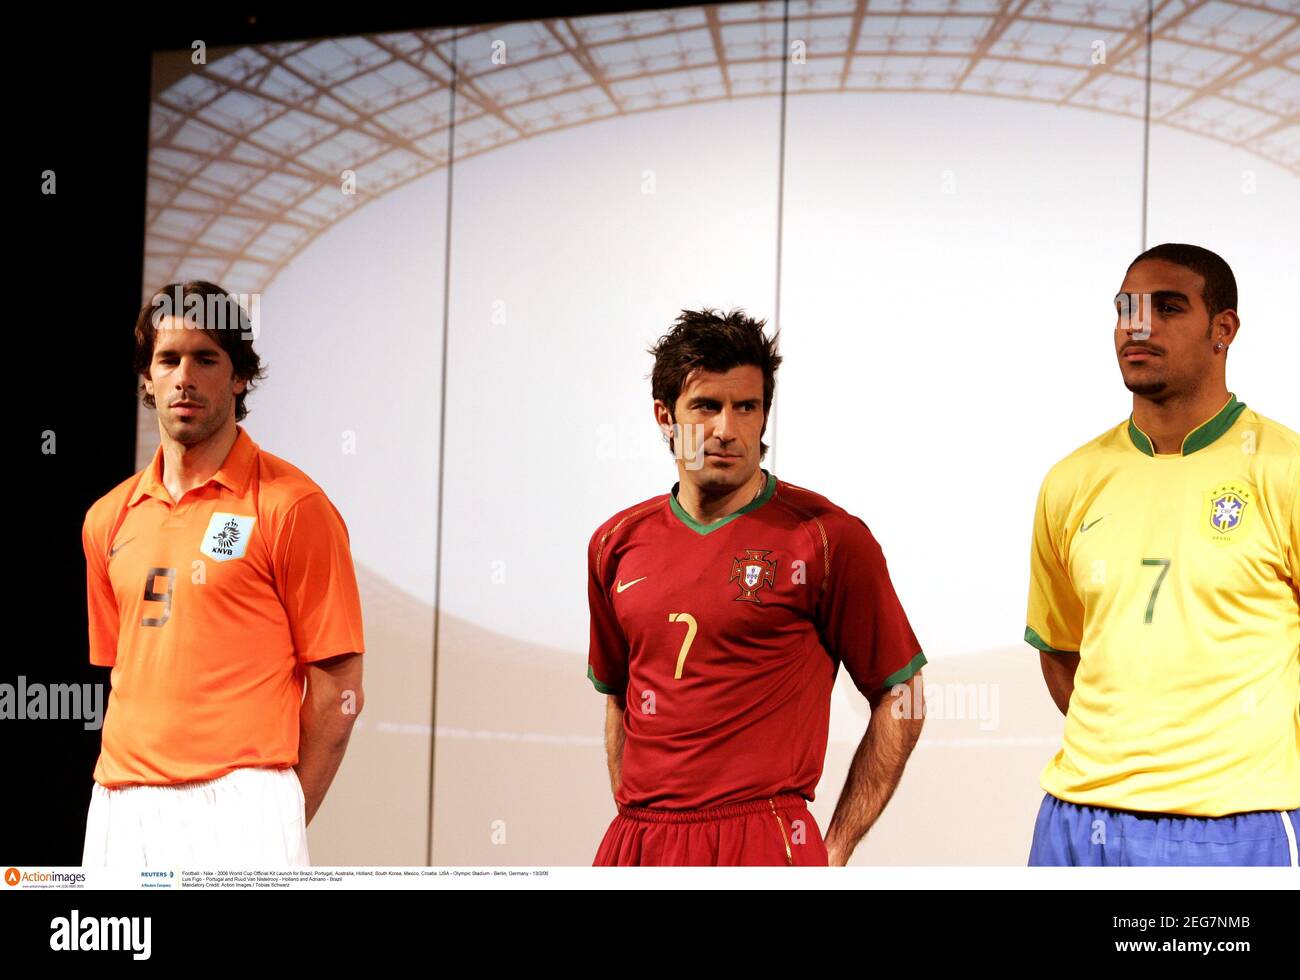 Fútbol - Nike - lanzamiento oficial de la Mundial 2006 para Brasil, Portugal, Australia, Holanda, Corea del Sur, México, Croacia y EE.UU. - Estadio - Berlín, Alemania - 13/2/06 Luis